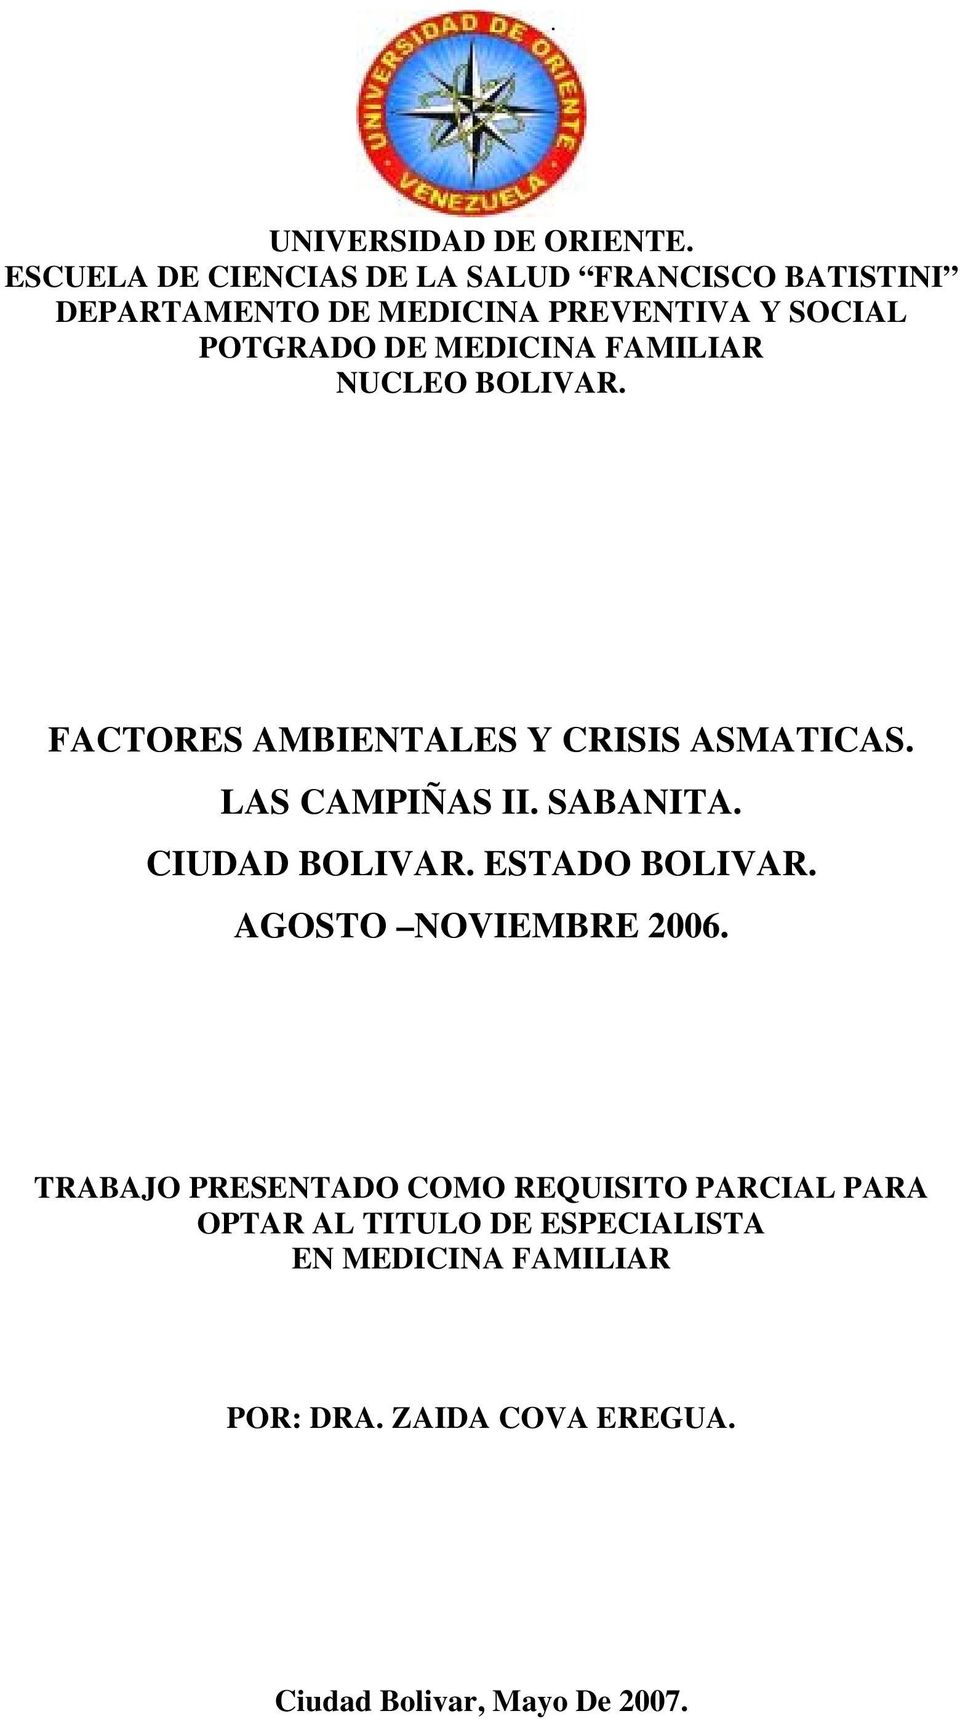 MEDICINA FAMILIAR NUCLEO BOLIVAR. FACTORES AMBIENTALES Y CRISIS ASMATICAS. LAS CAMPIÑAS II. SABANITA.